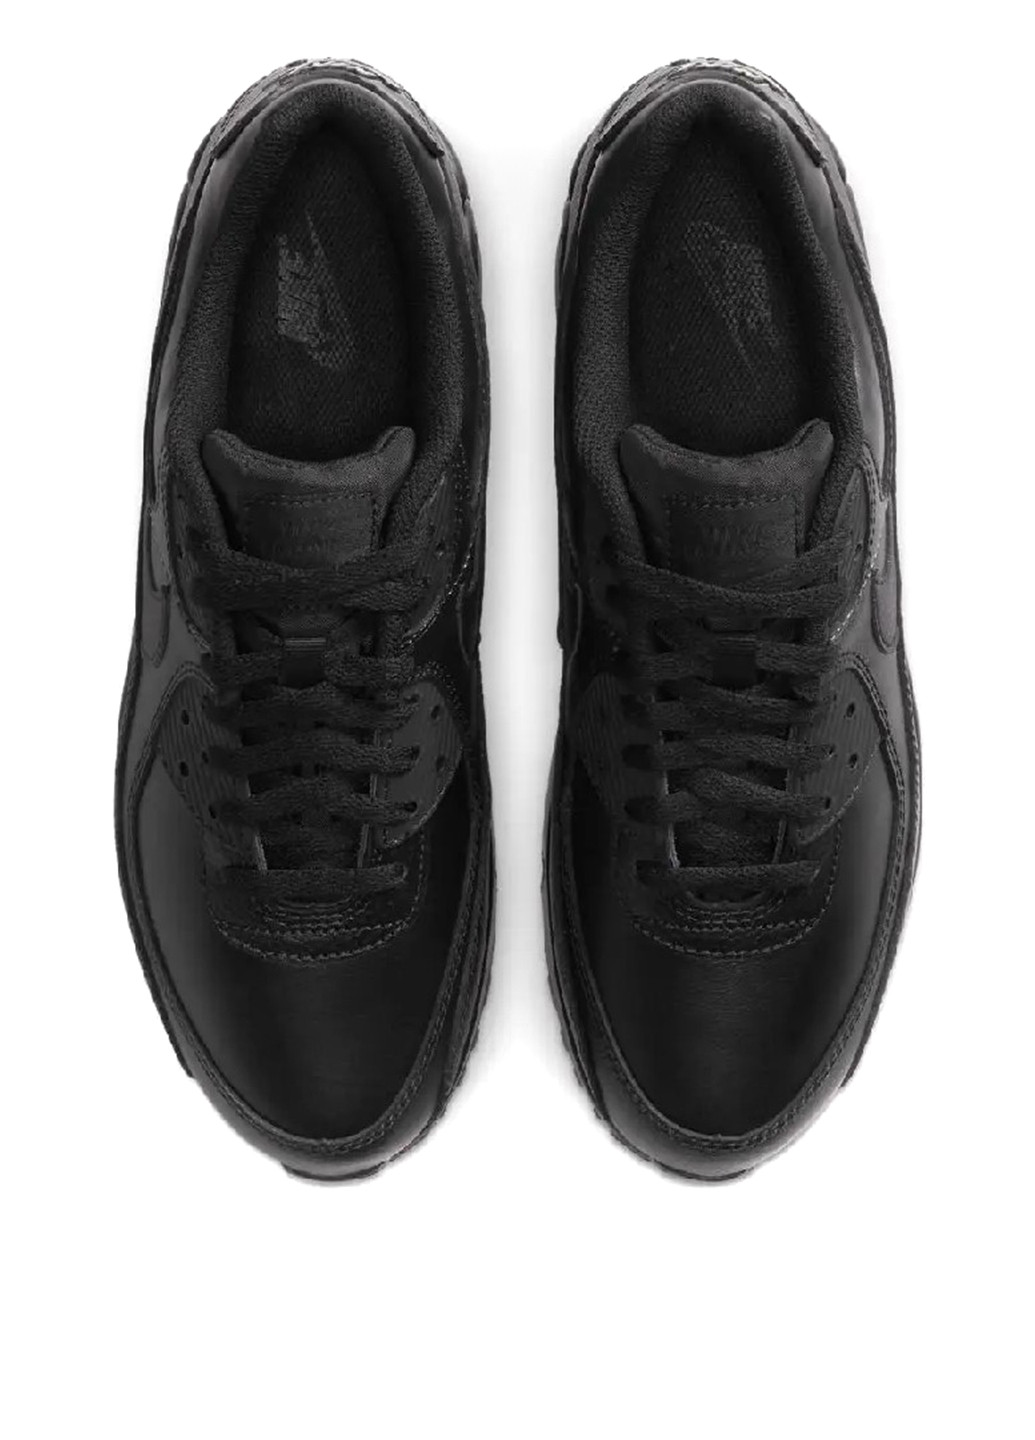 Черные демисезонные кроссовки cz5594-001_2024 Nike AIR MAX 90 LTR